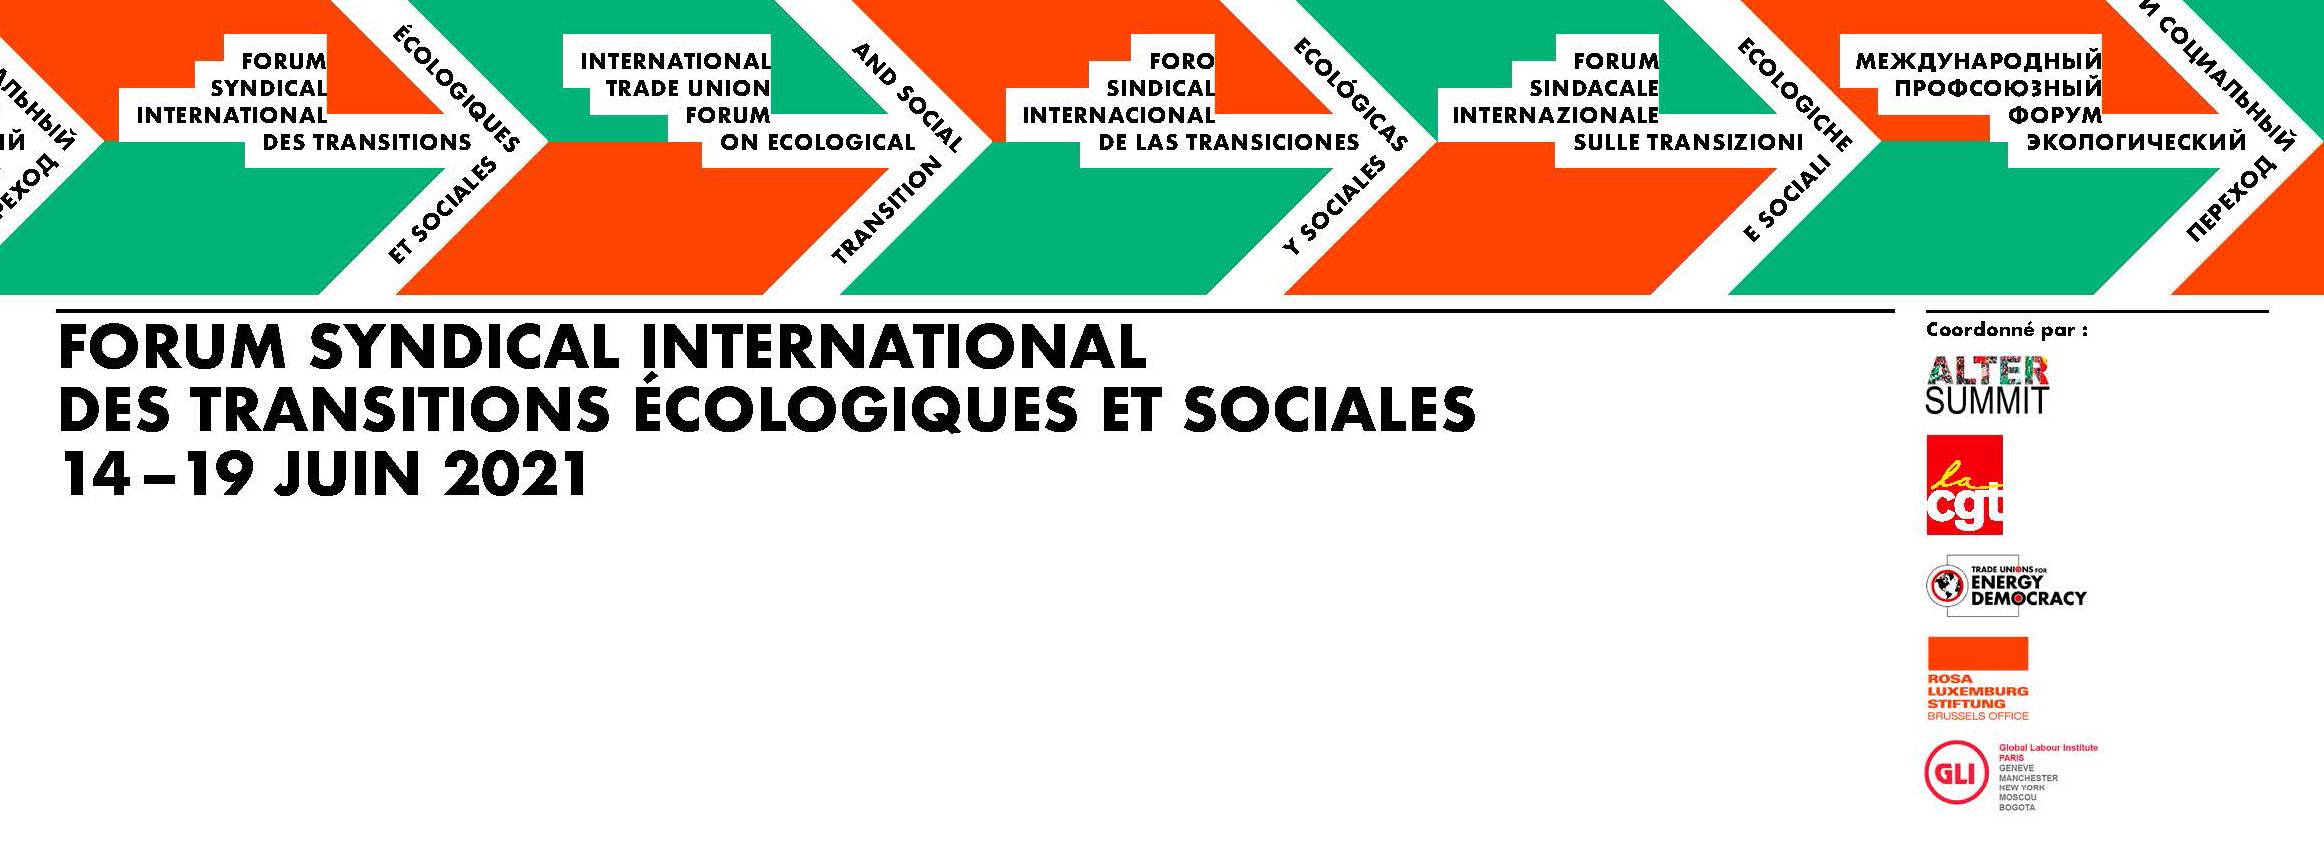 Forum Syndical International des Transitions Ecologiques et Sociales : femmes et climat